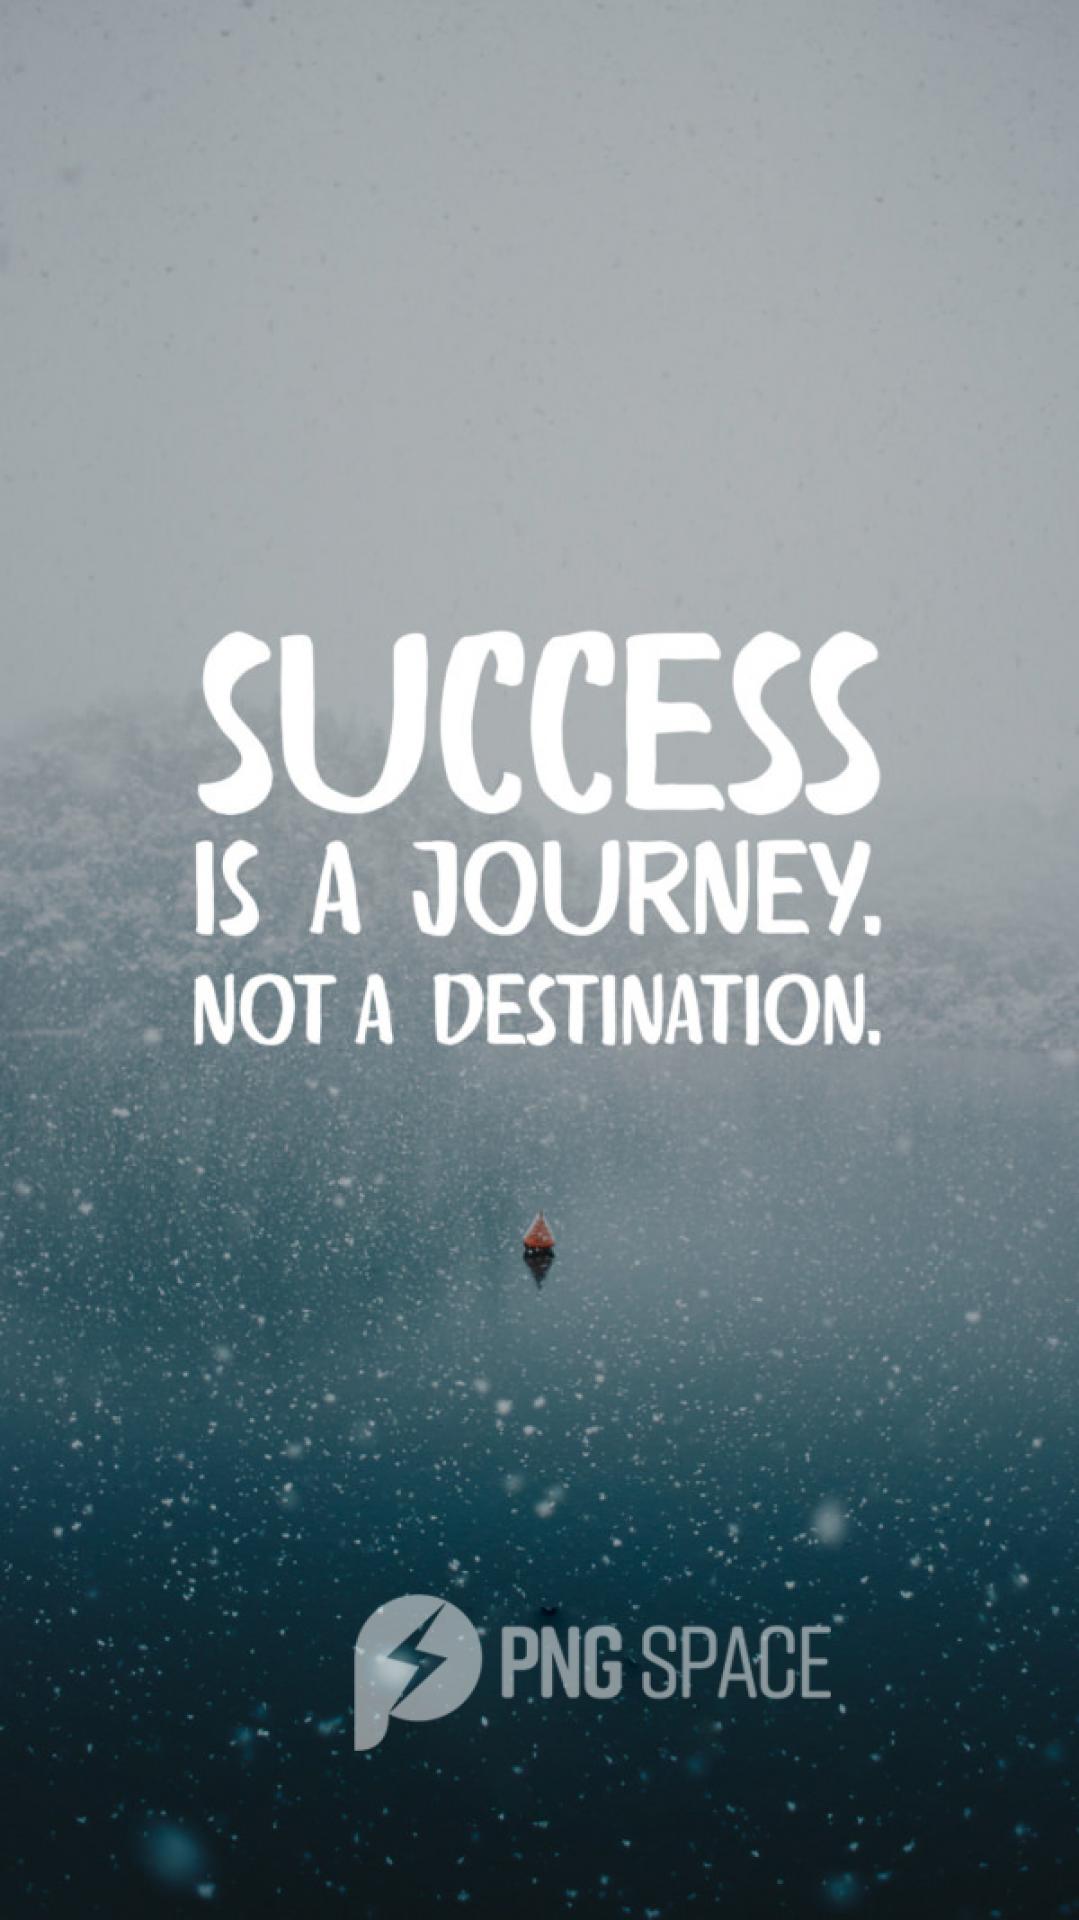 success is a journey not a destination.